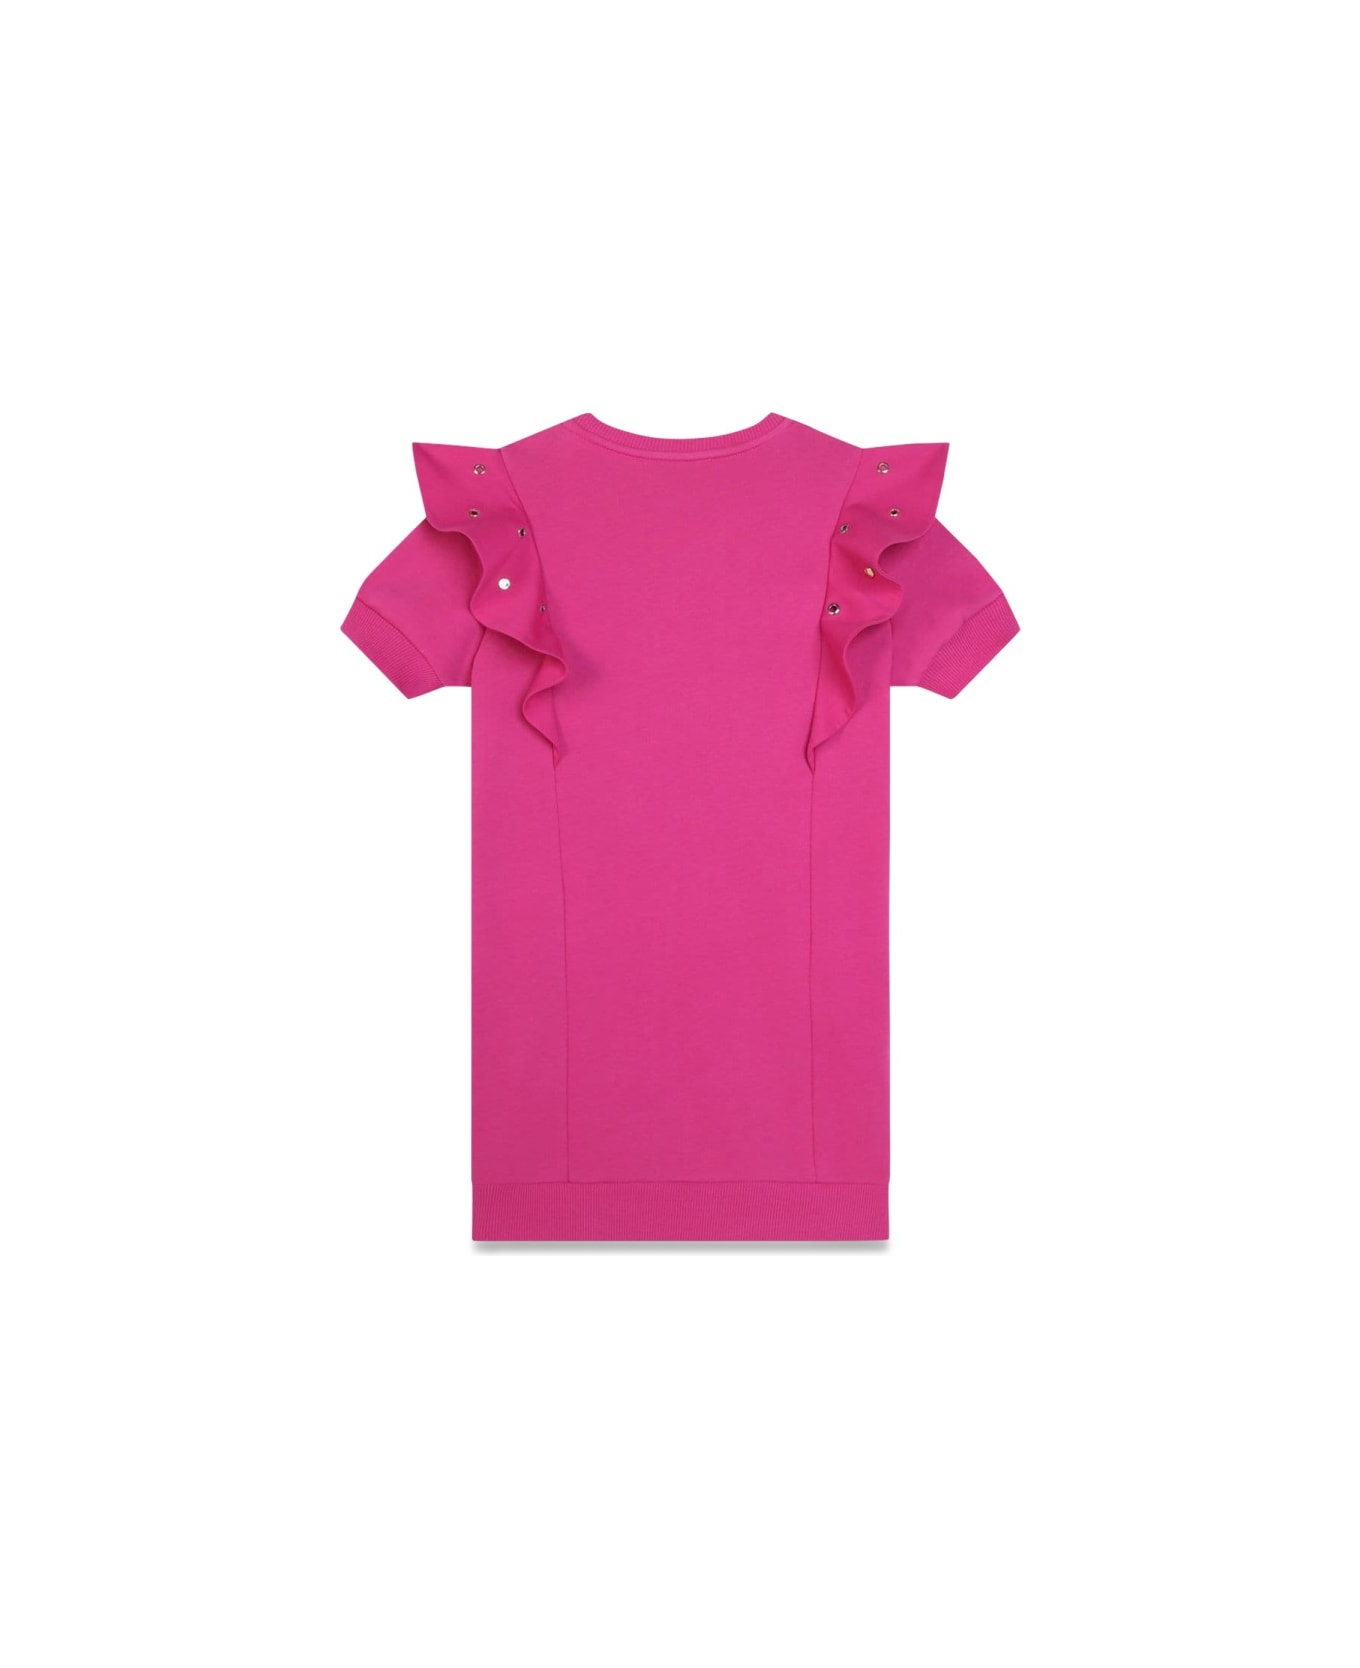 Chloé M/c Dress - PINK